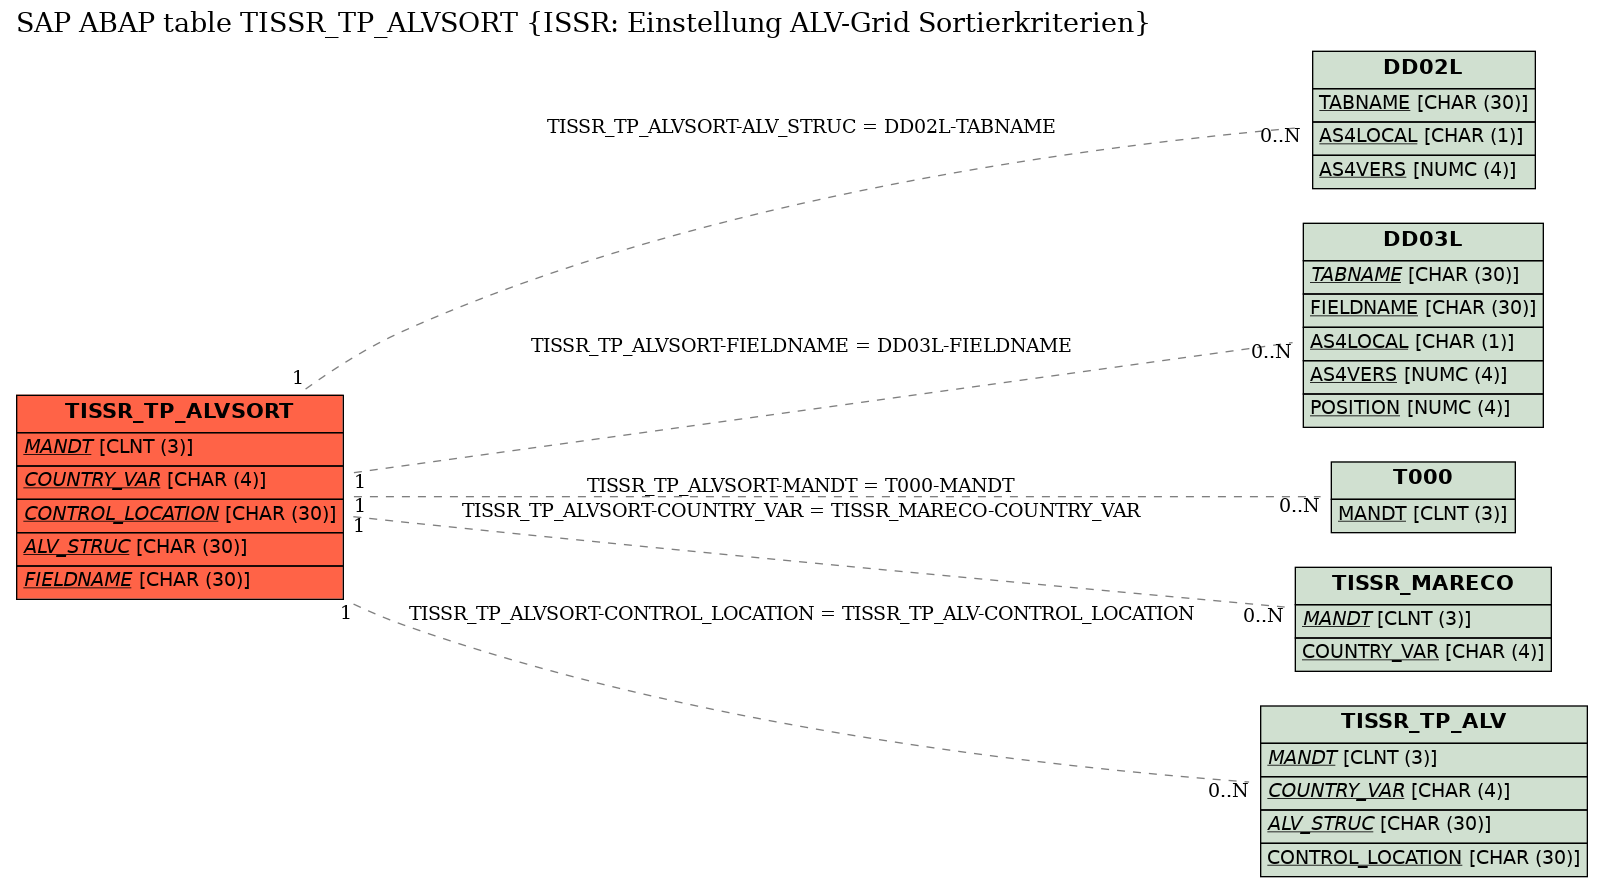 E-R Diagram for table TISSR_TP_ALVSORT (ISSR: Einstellung ALV-Grid Sortierkriterien)